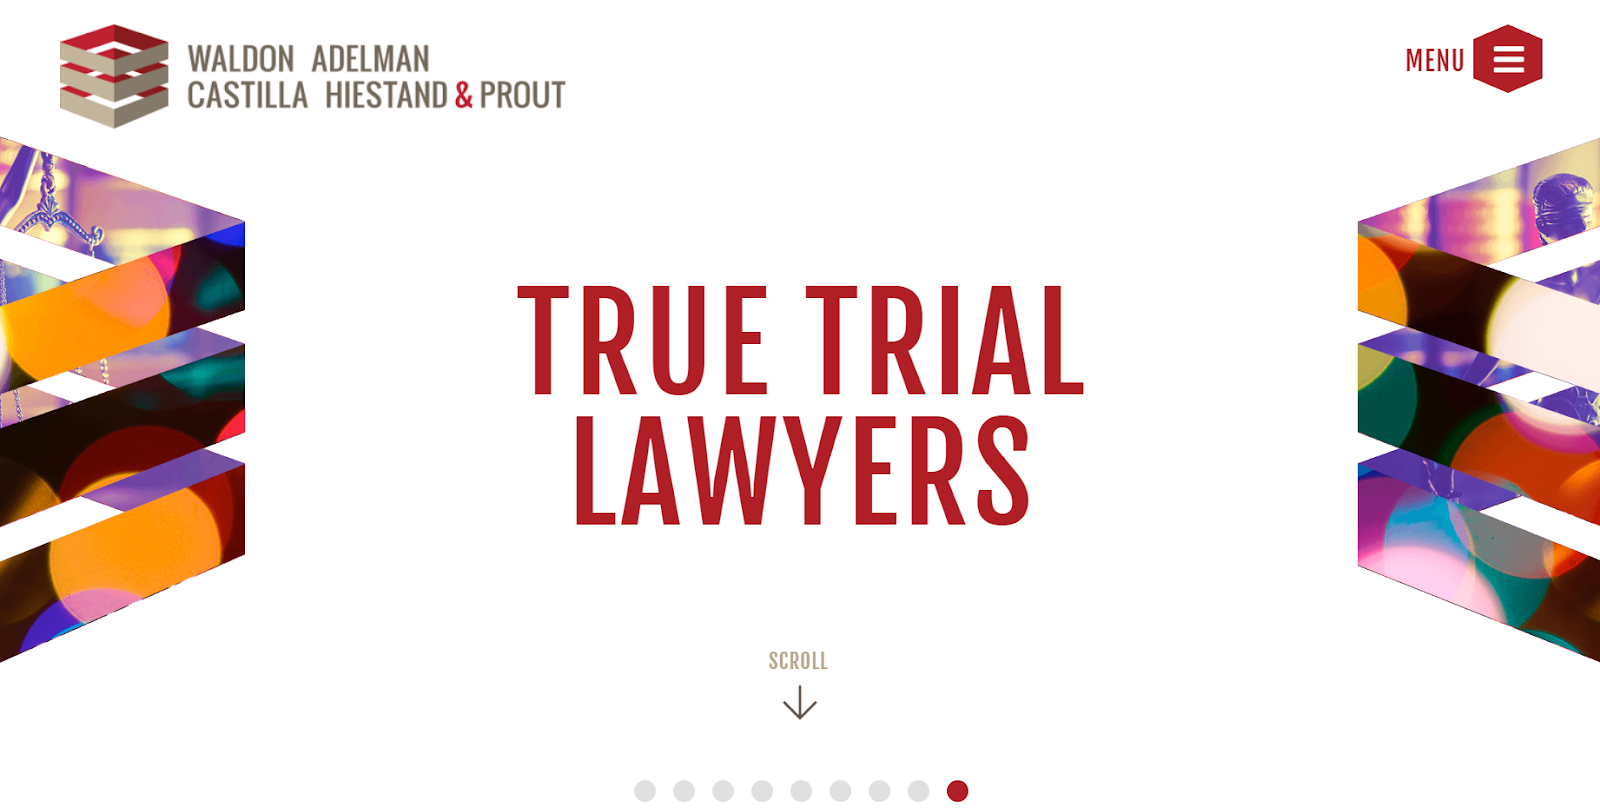 True Trial lawyer's website